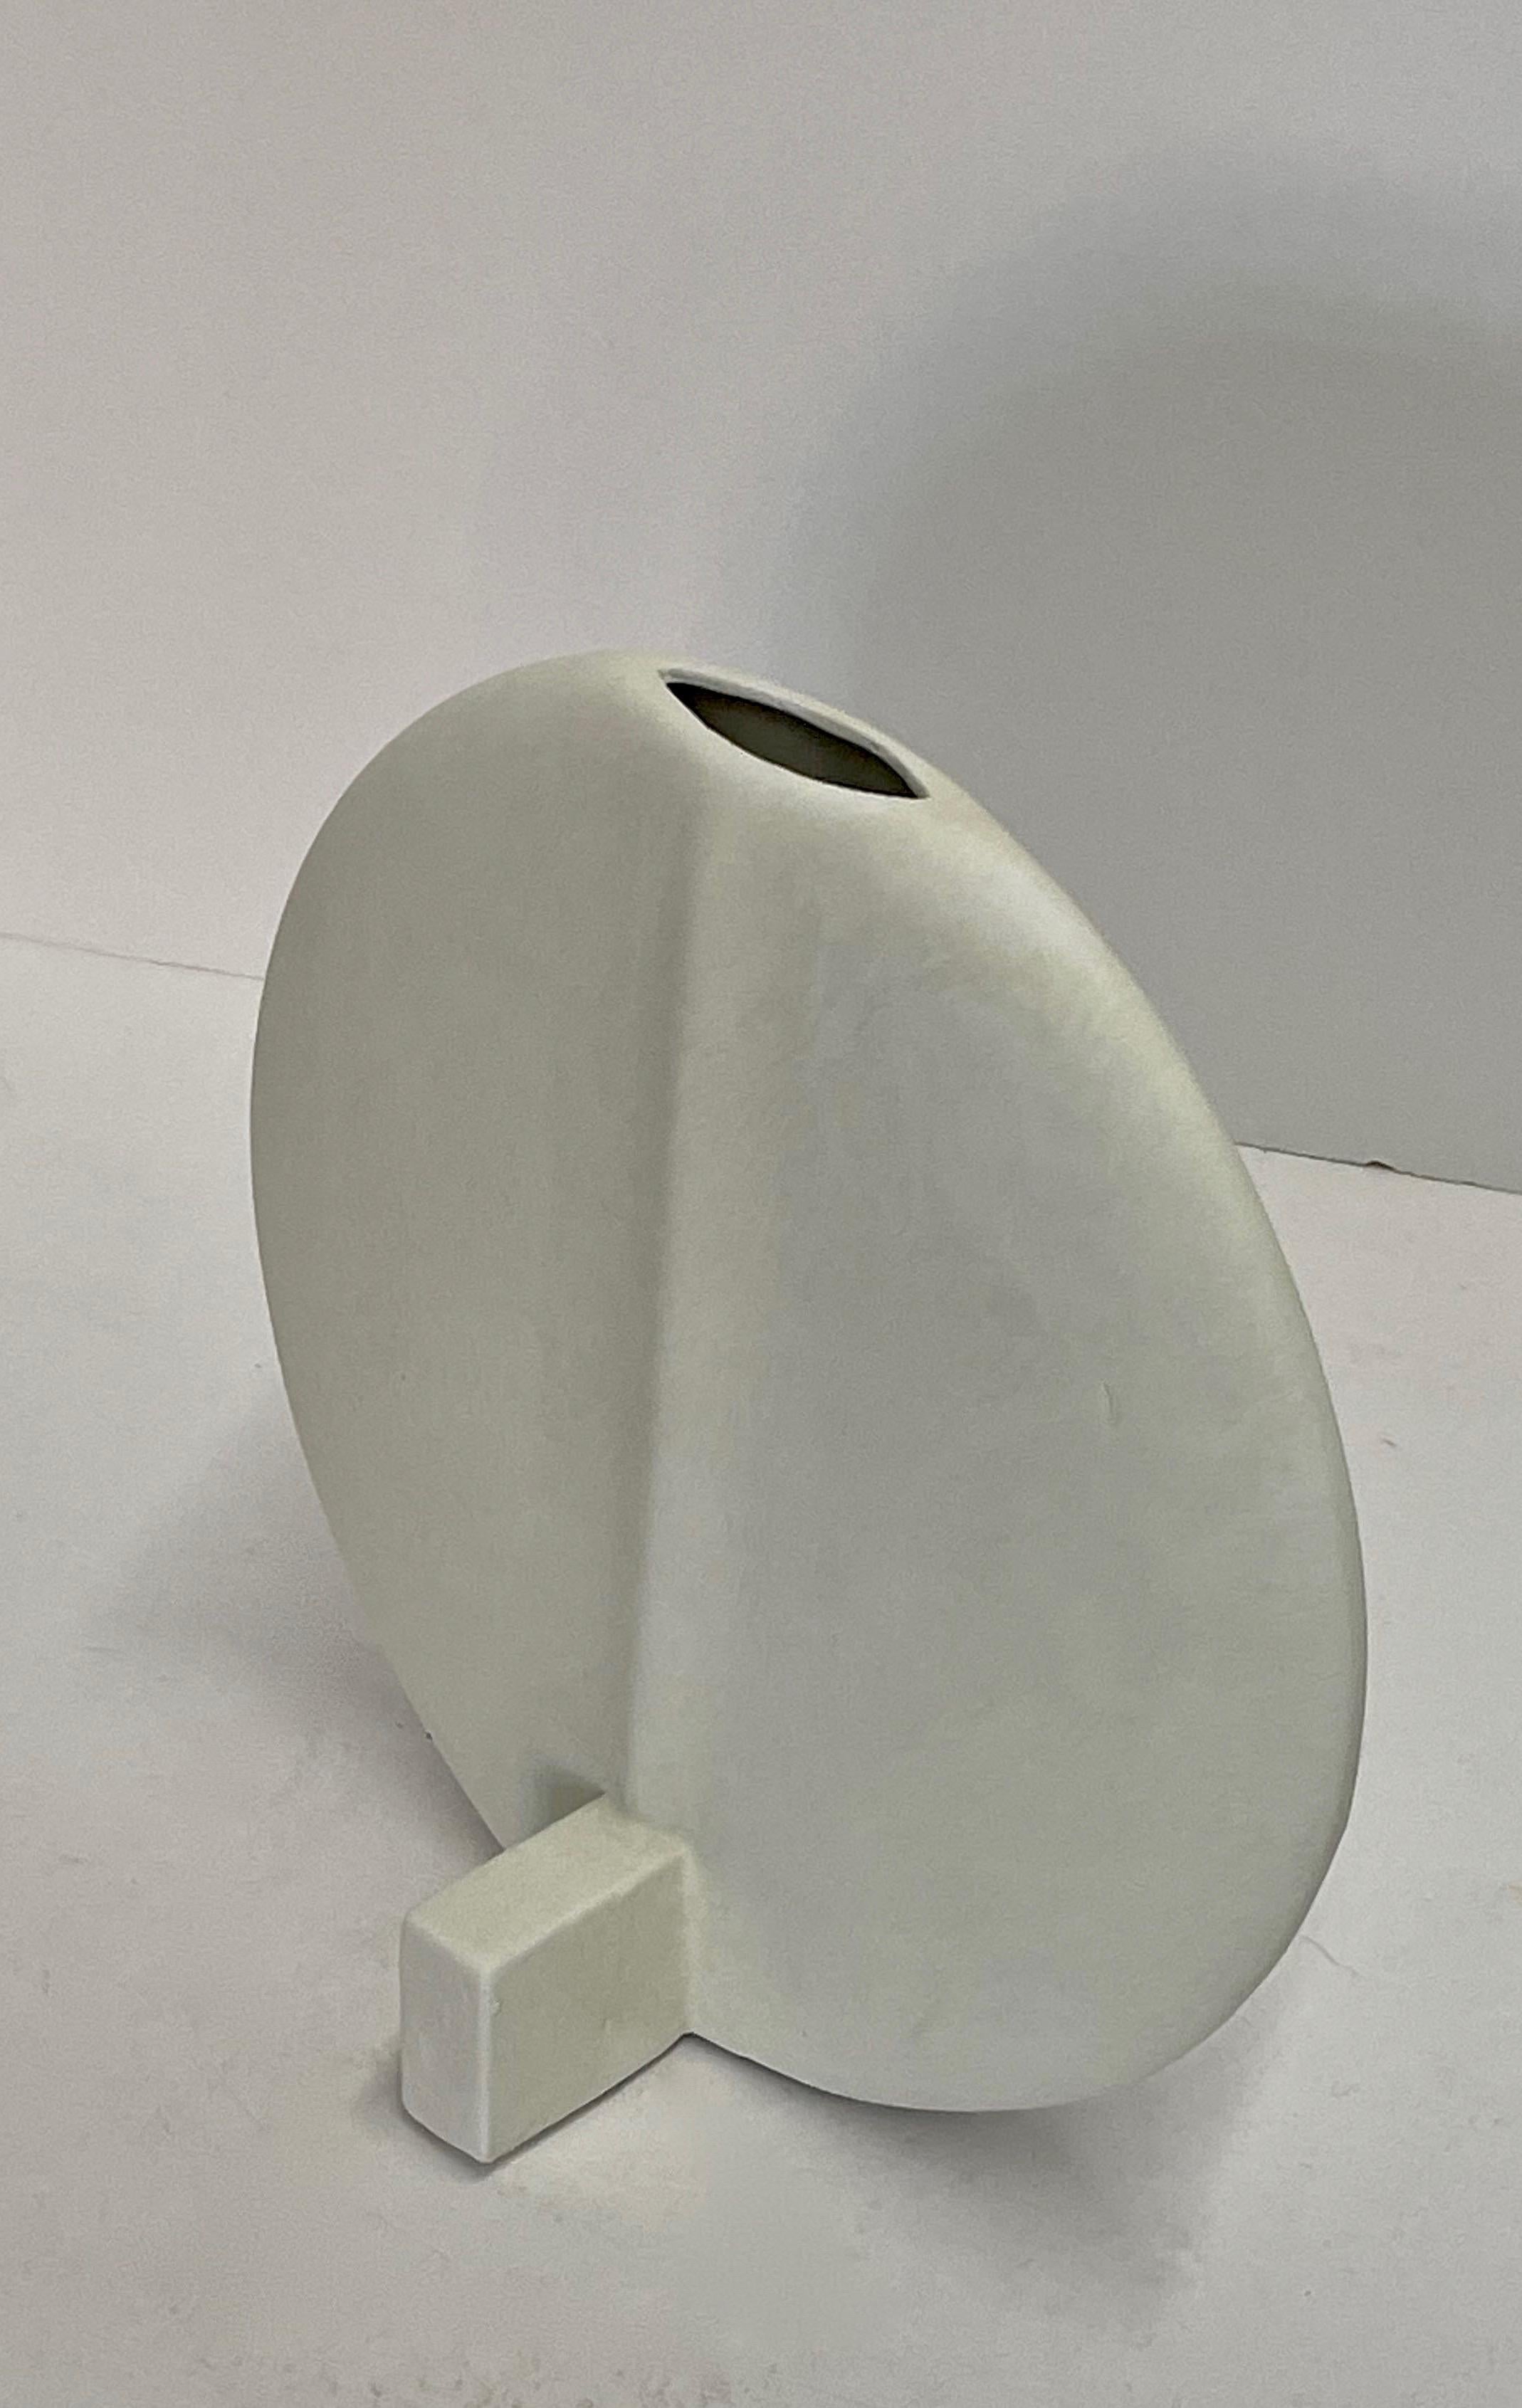 Zeitgenössische dänische Mini-Vase in Form einer dünnen Scheibe mit weißer Glasur.
Ausguss in der Mitte.
Sitzt auf einem Selbstständer.
Erhältlich in anderen Größen in Dunkelgrau.